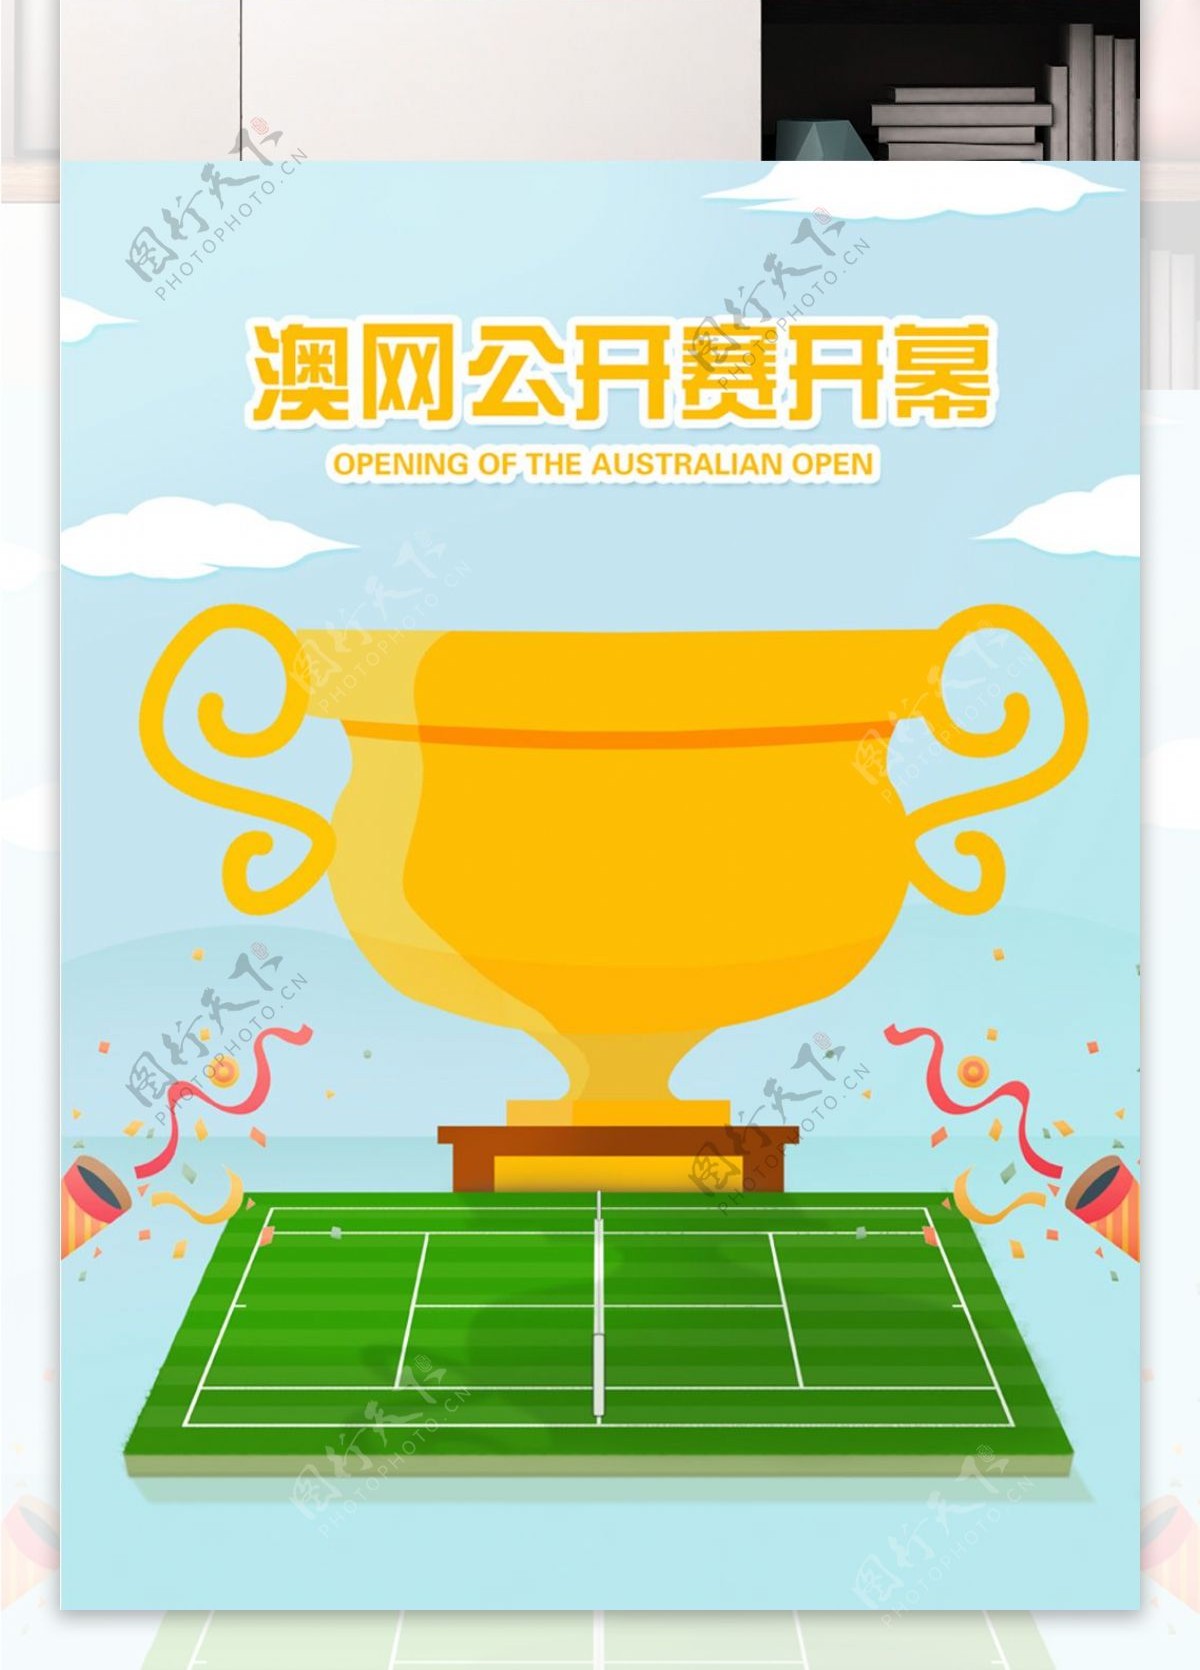 澳网公开赛开幕原创插画微信配图海报